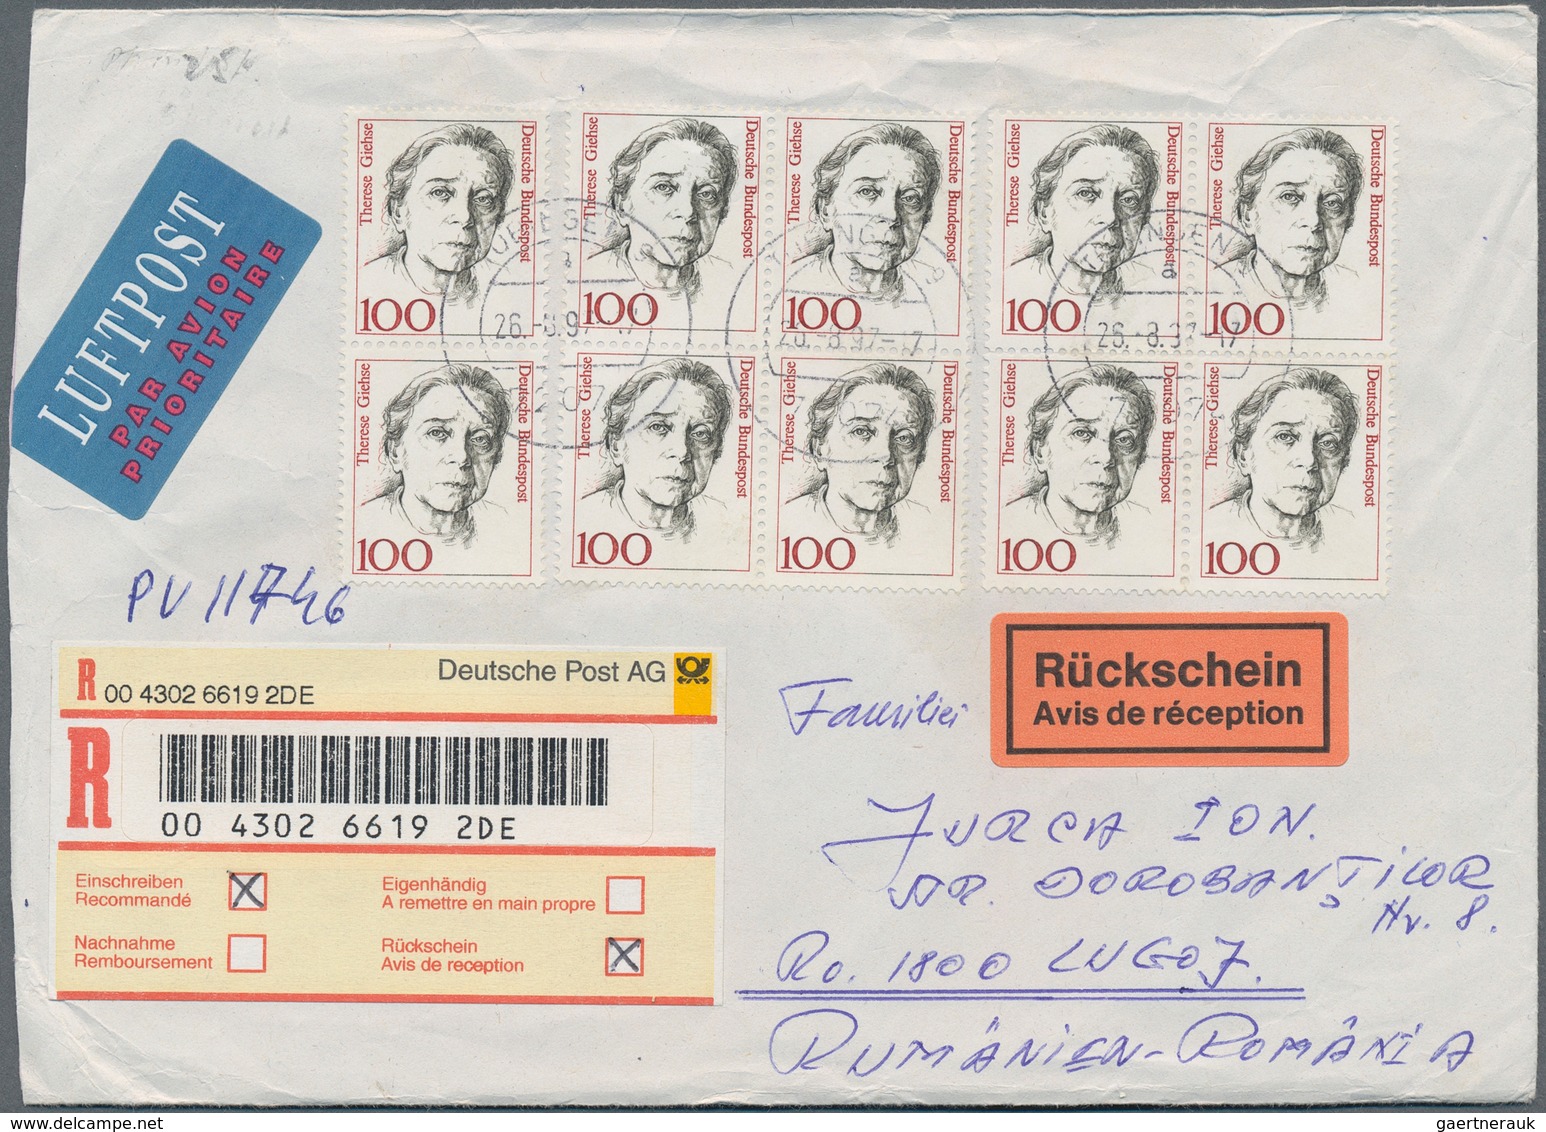 32783 Bundesrepublik Deutschland: 1988/2000, Sammlung von ca. 300/400 modernen Belegen, meist mit Dauerser